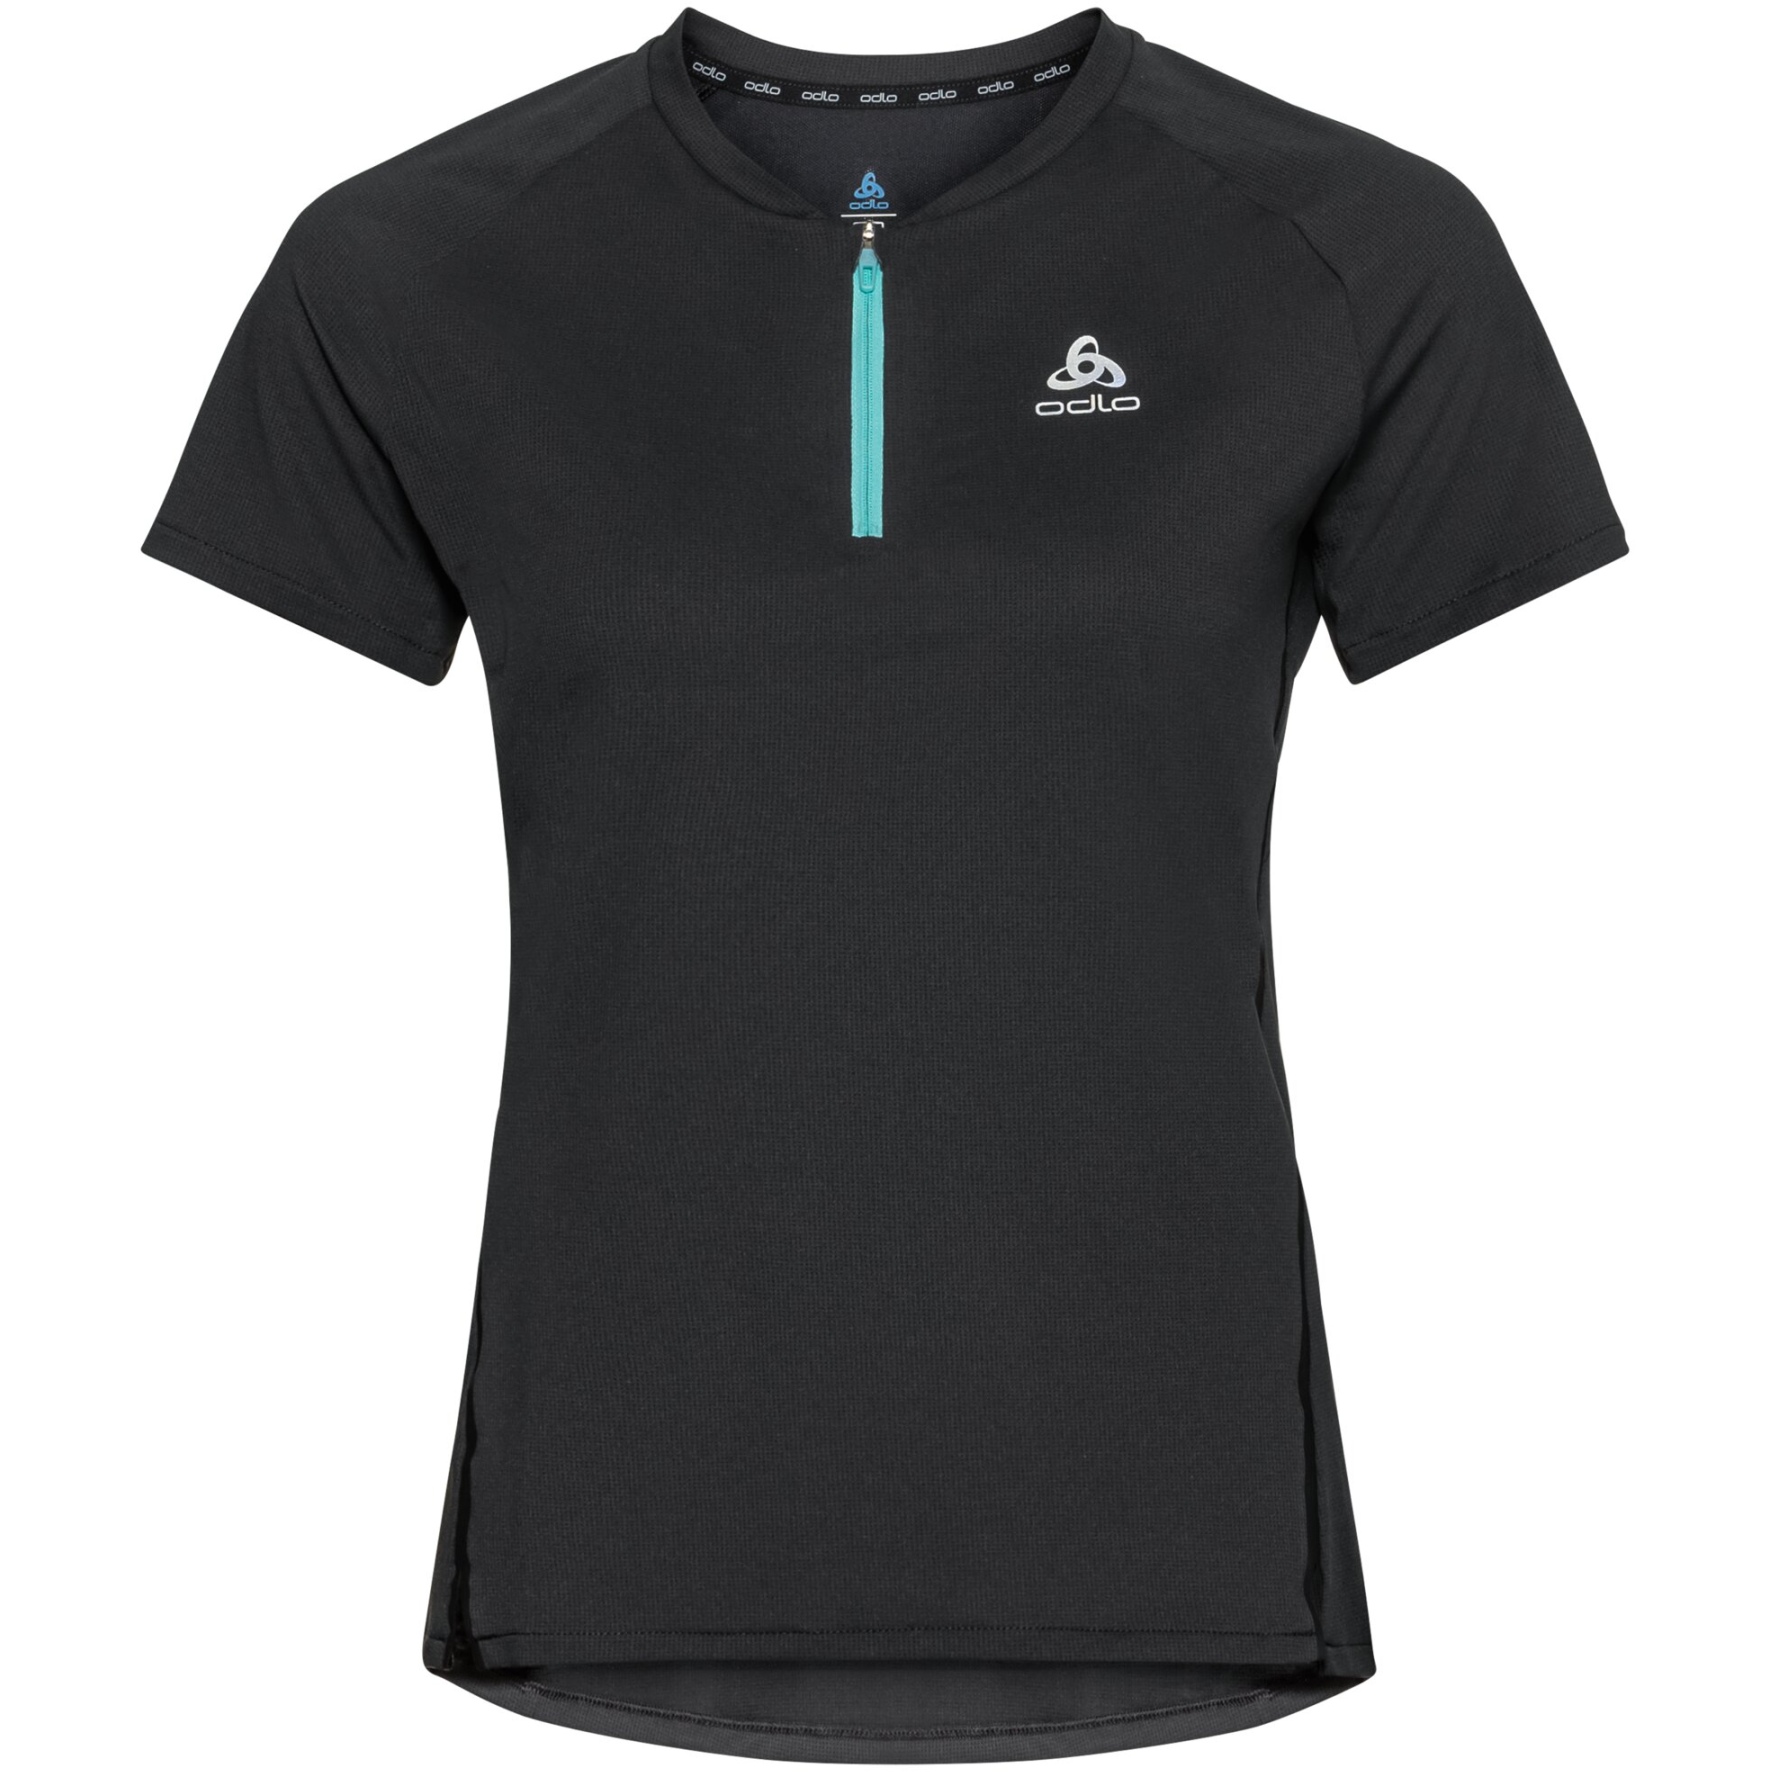 Produktbild von Odlo Damen X-Alp Laufshirt mit Halbreissverschluss - black - polynya